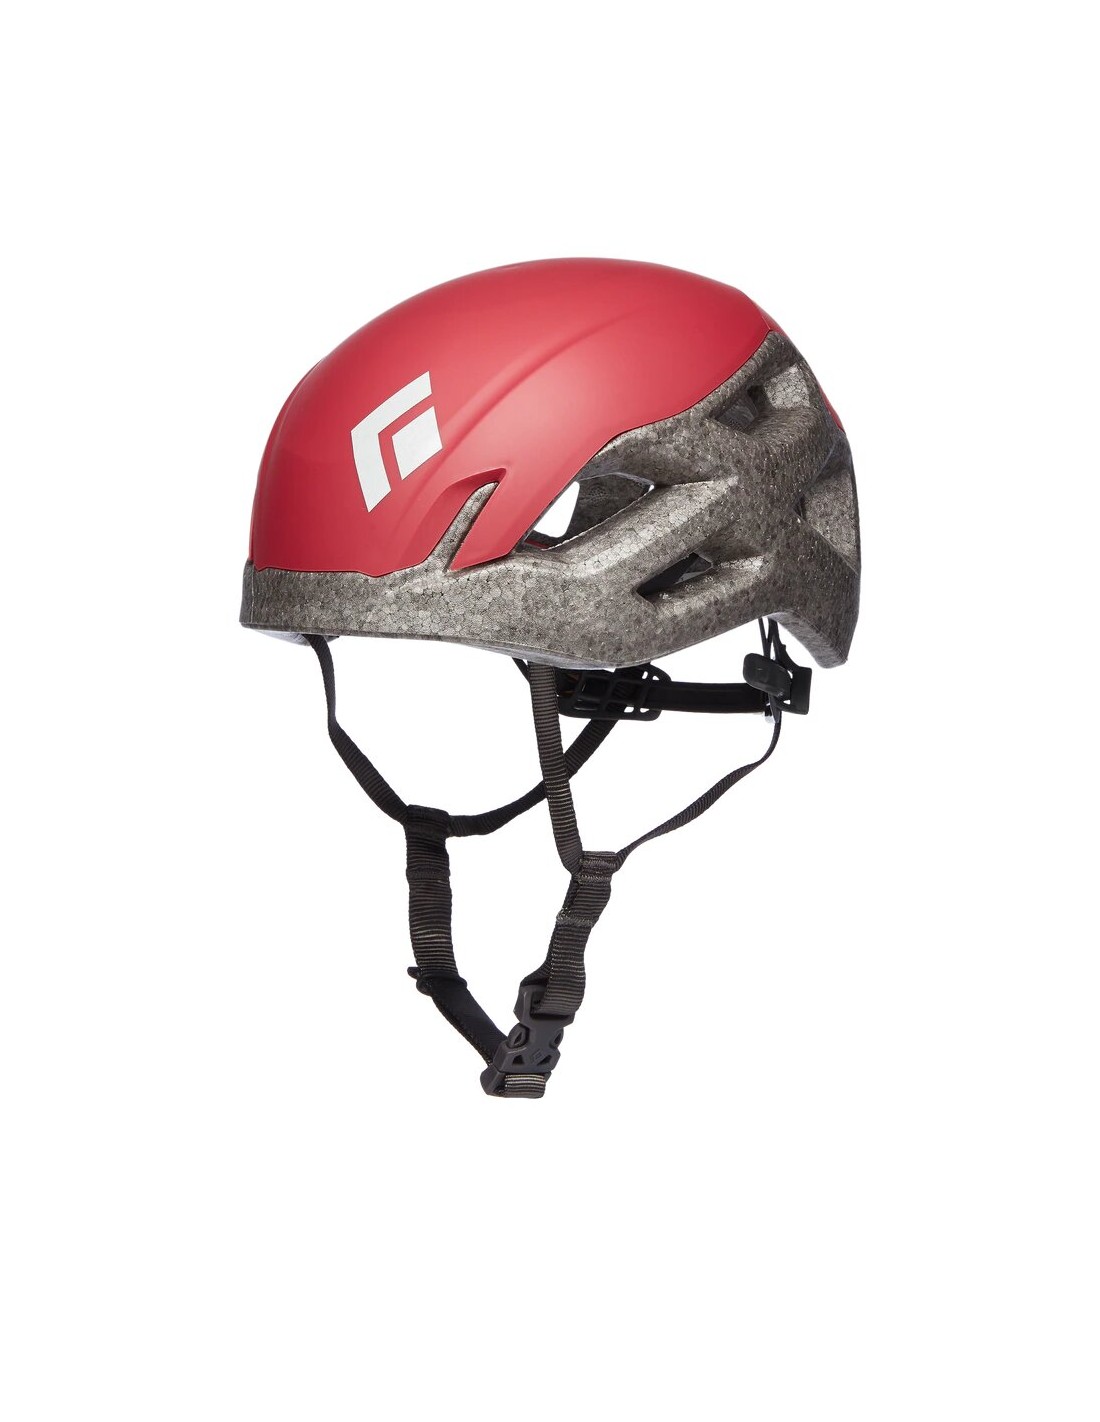 Black Diamond Kletterhelm Vision Helmet - Women's, Bordeaux, Größe S/M Kletterhelmfarbe - Rot, Kletterhelmgewicht - 200 - 220g, Kletterhelmgröße (Kopfumfang) - ~ 53 - 59 cm, von Black Diamond